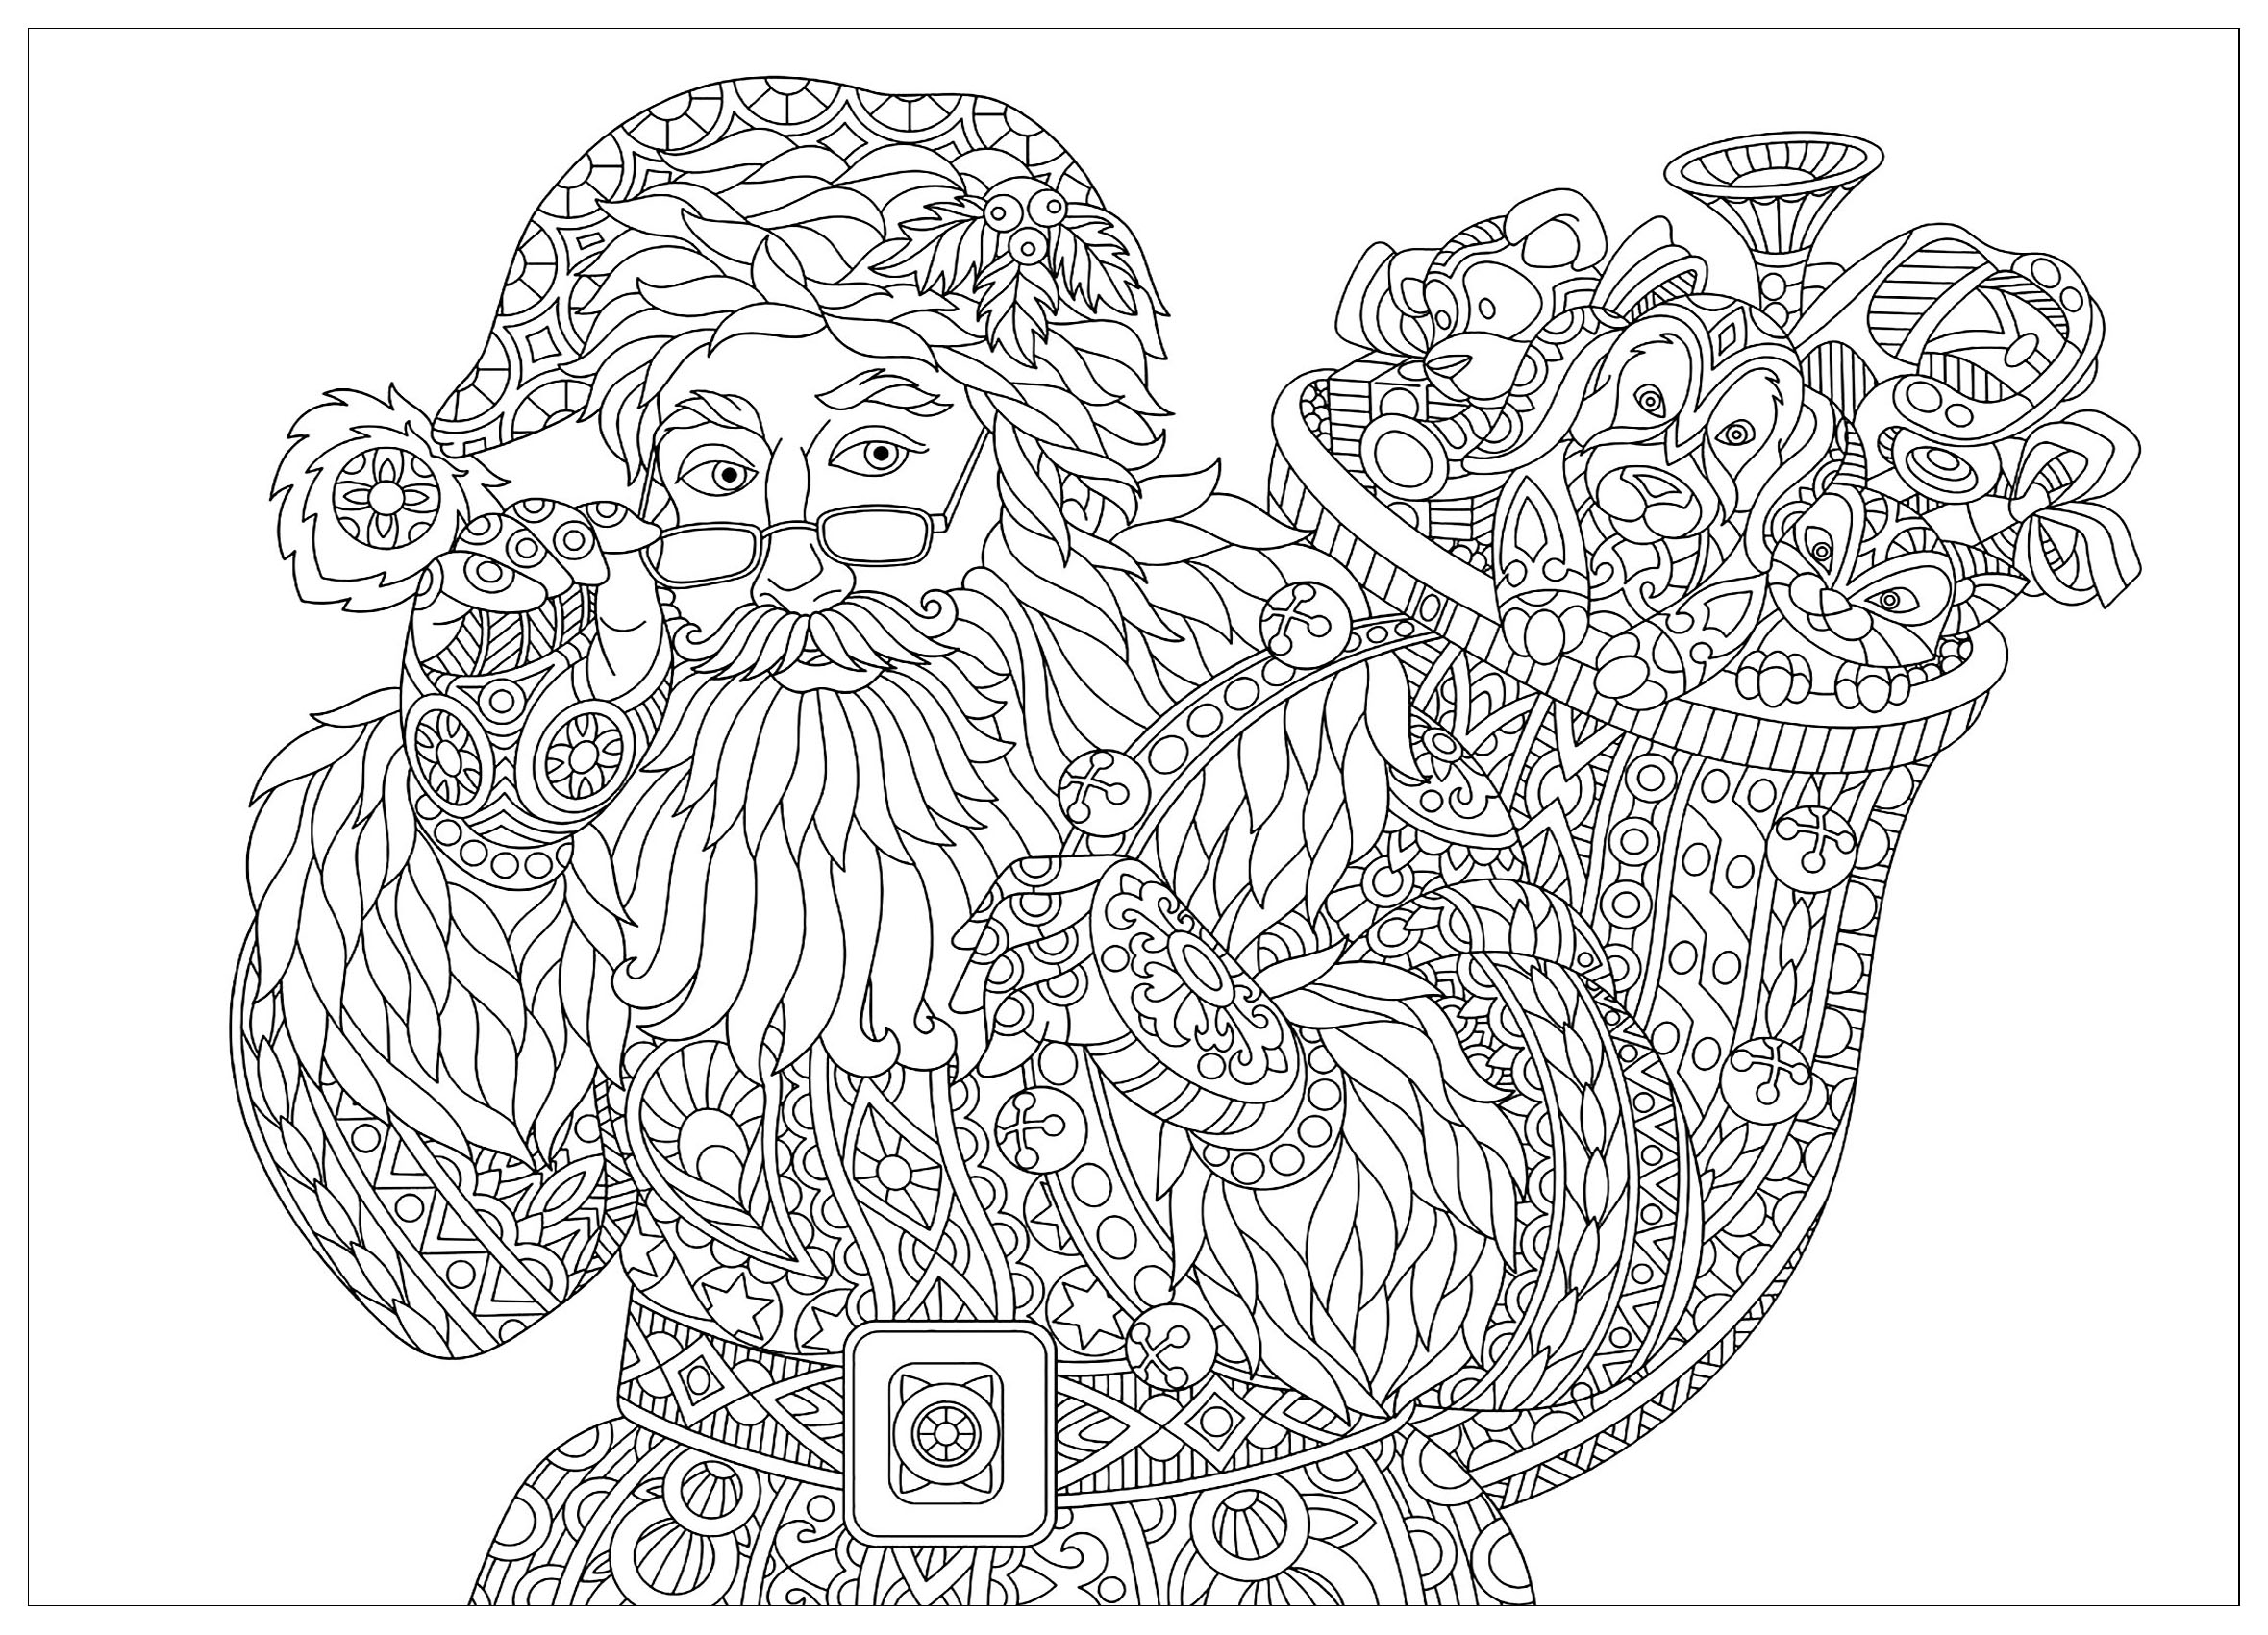 Desenhos simples para colorir gratuitos para crianças de Natal, Artista : Sybirko   Fonte : 123rf